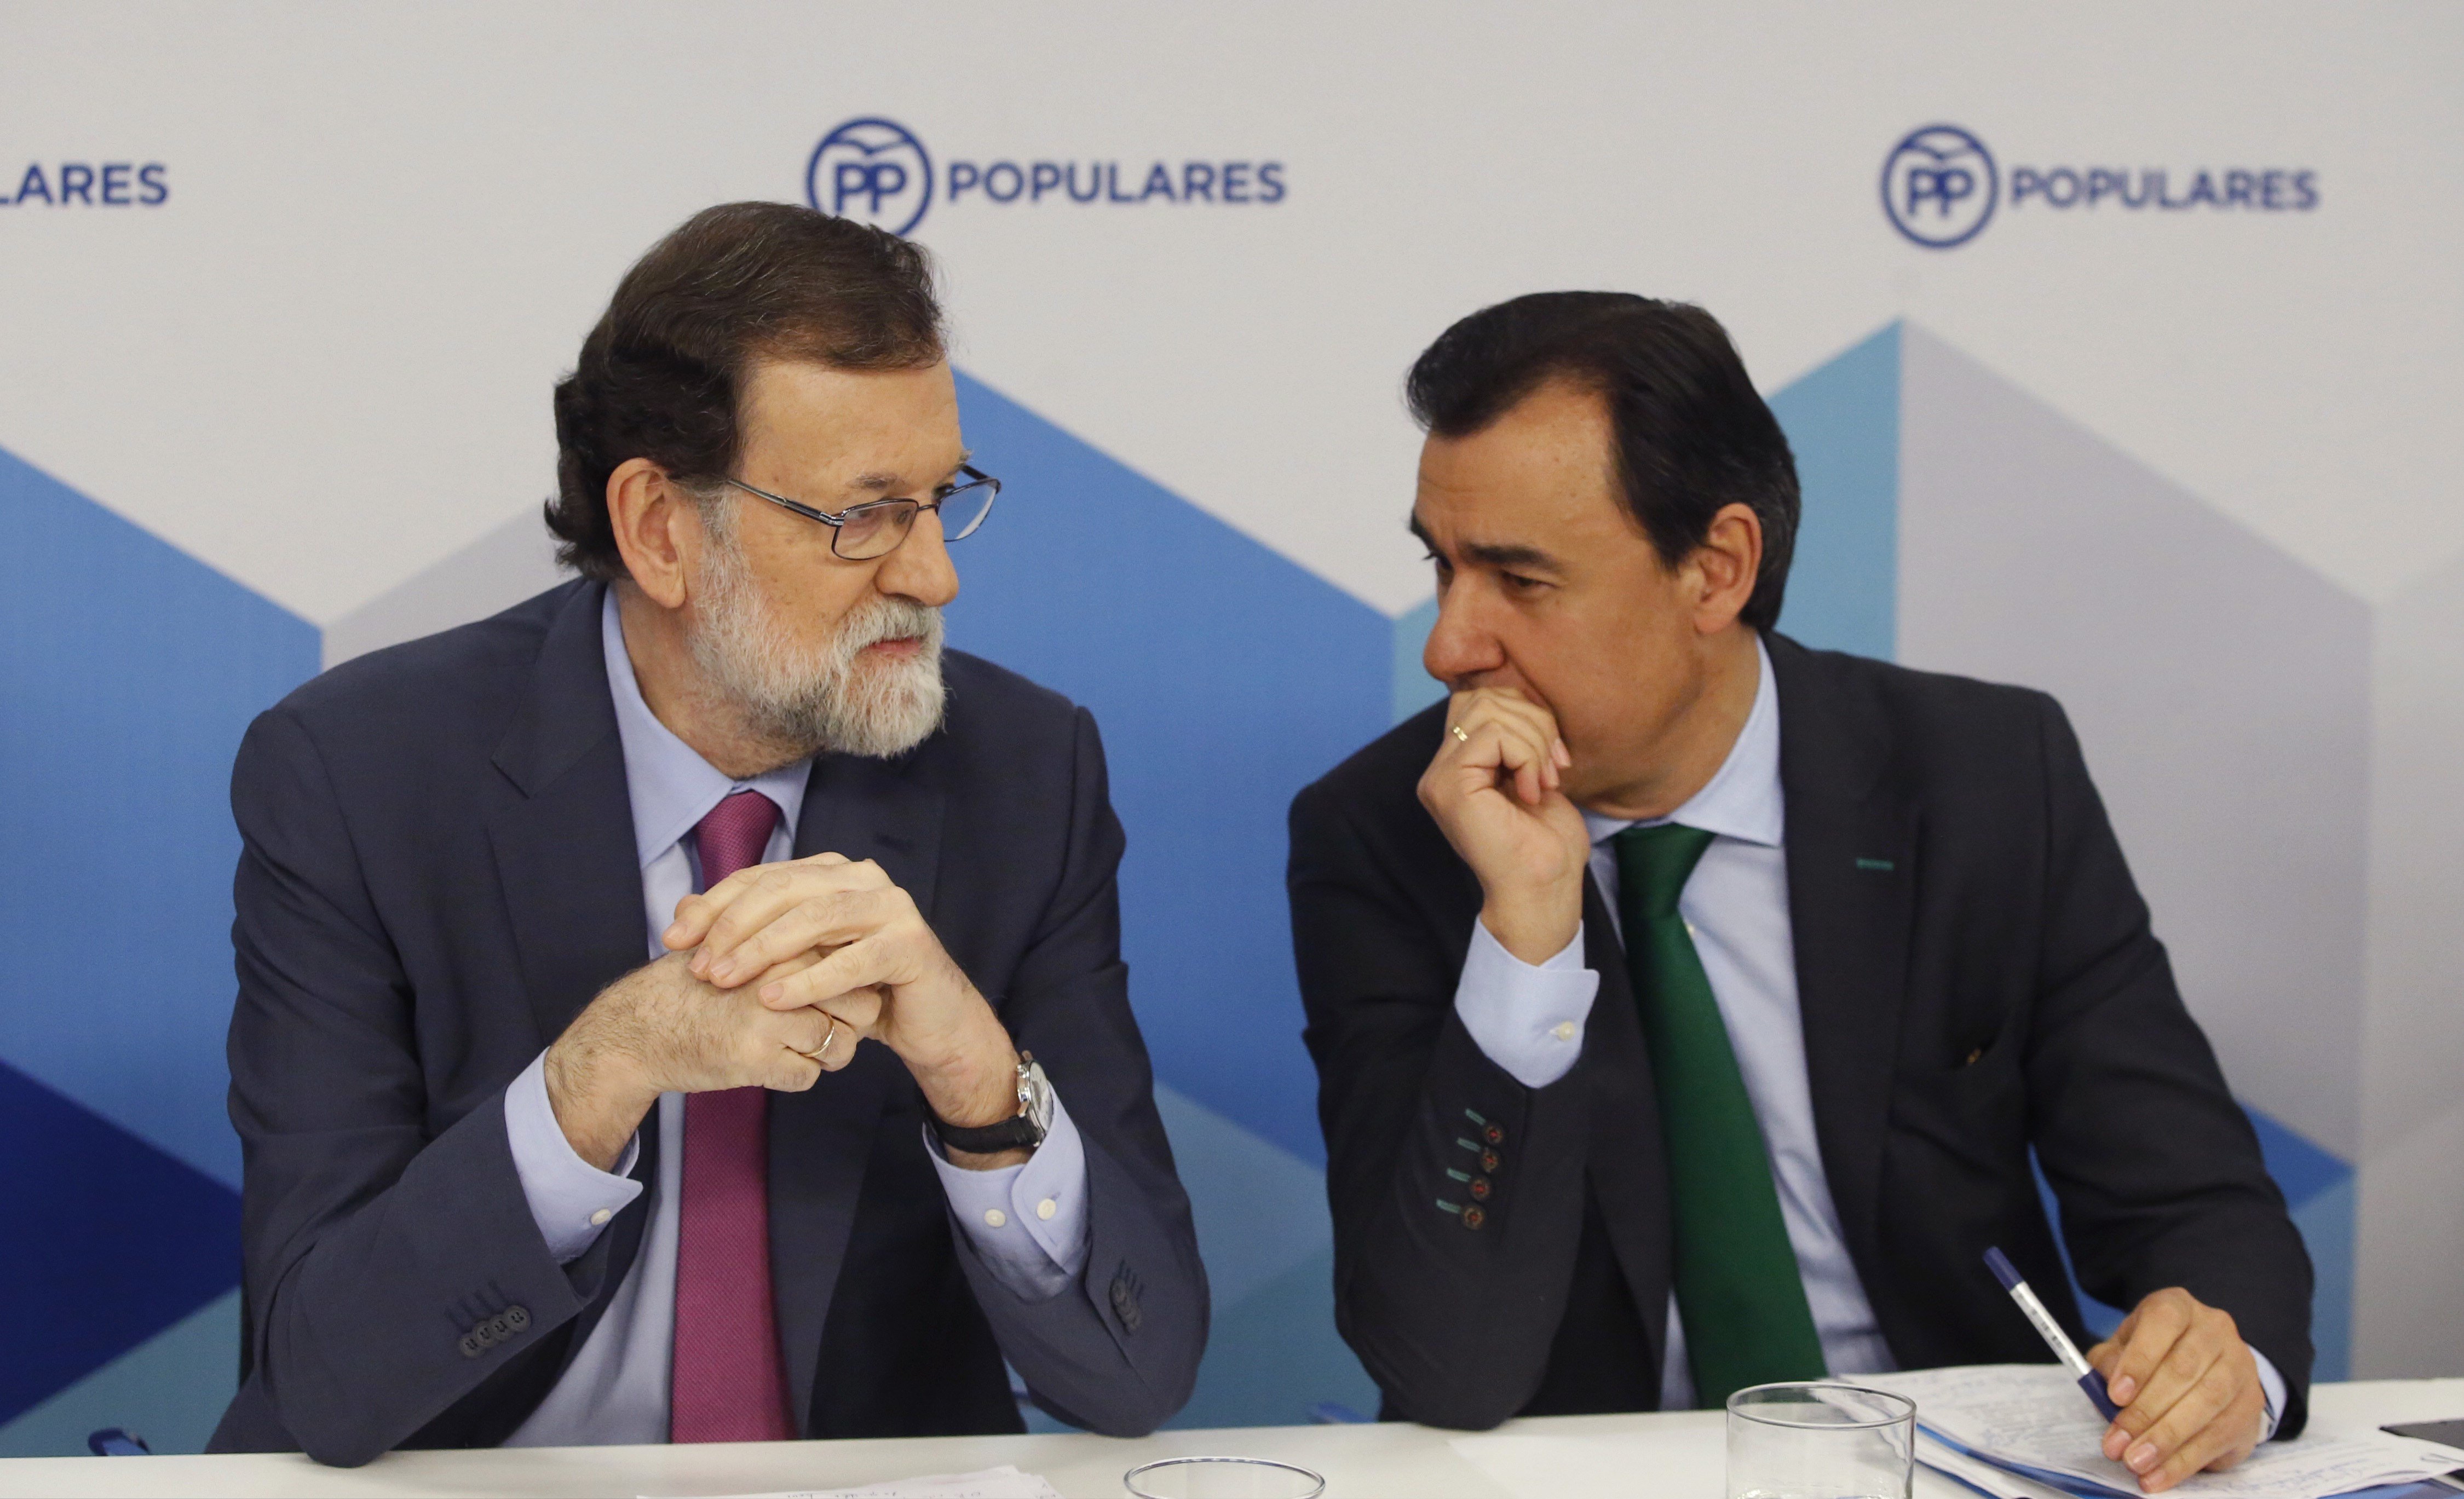 Creix el malestar al PP per la inacció de Rajoy amb Cs i el fiasco del 21-D